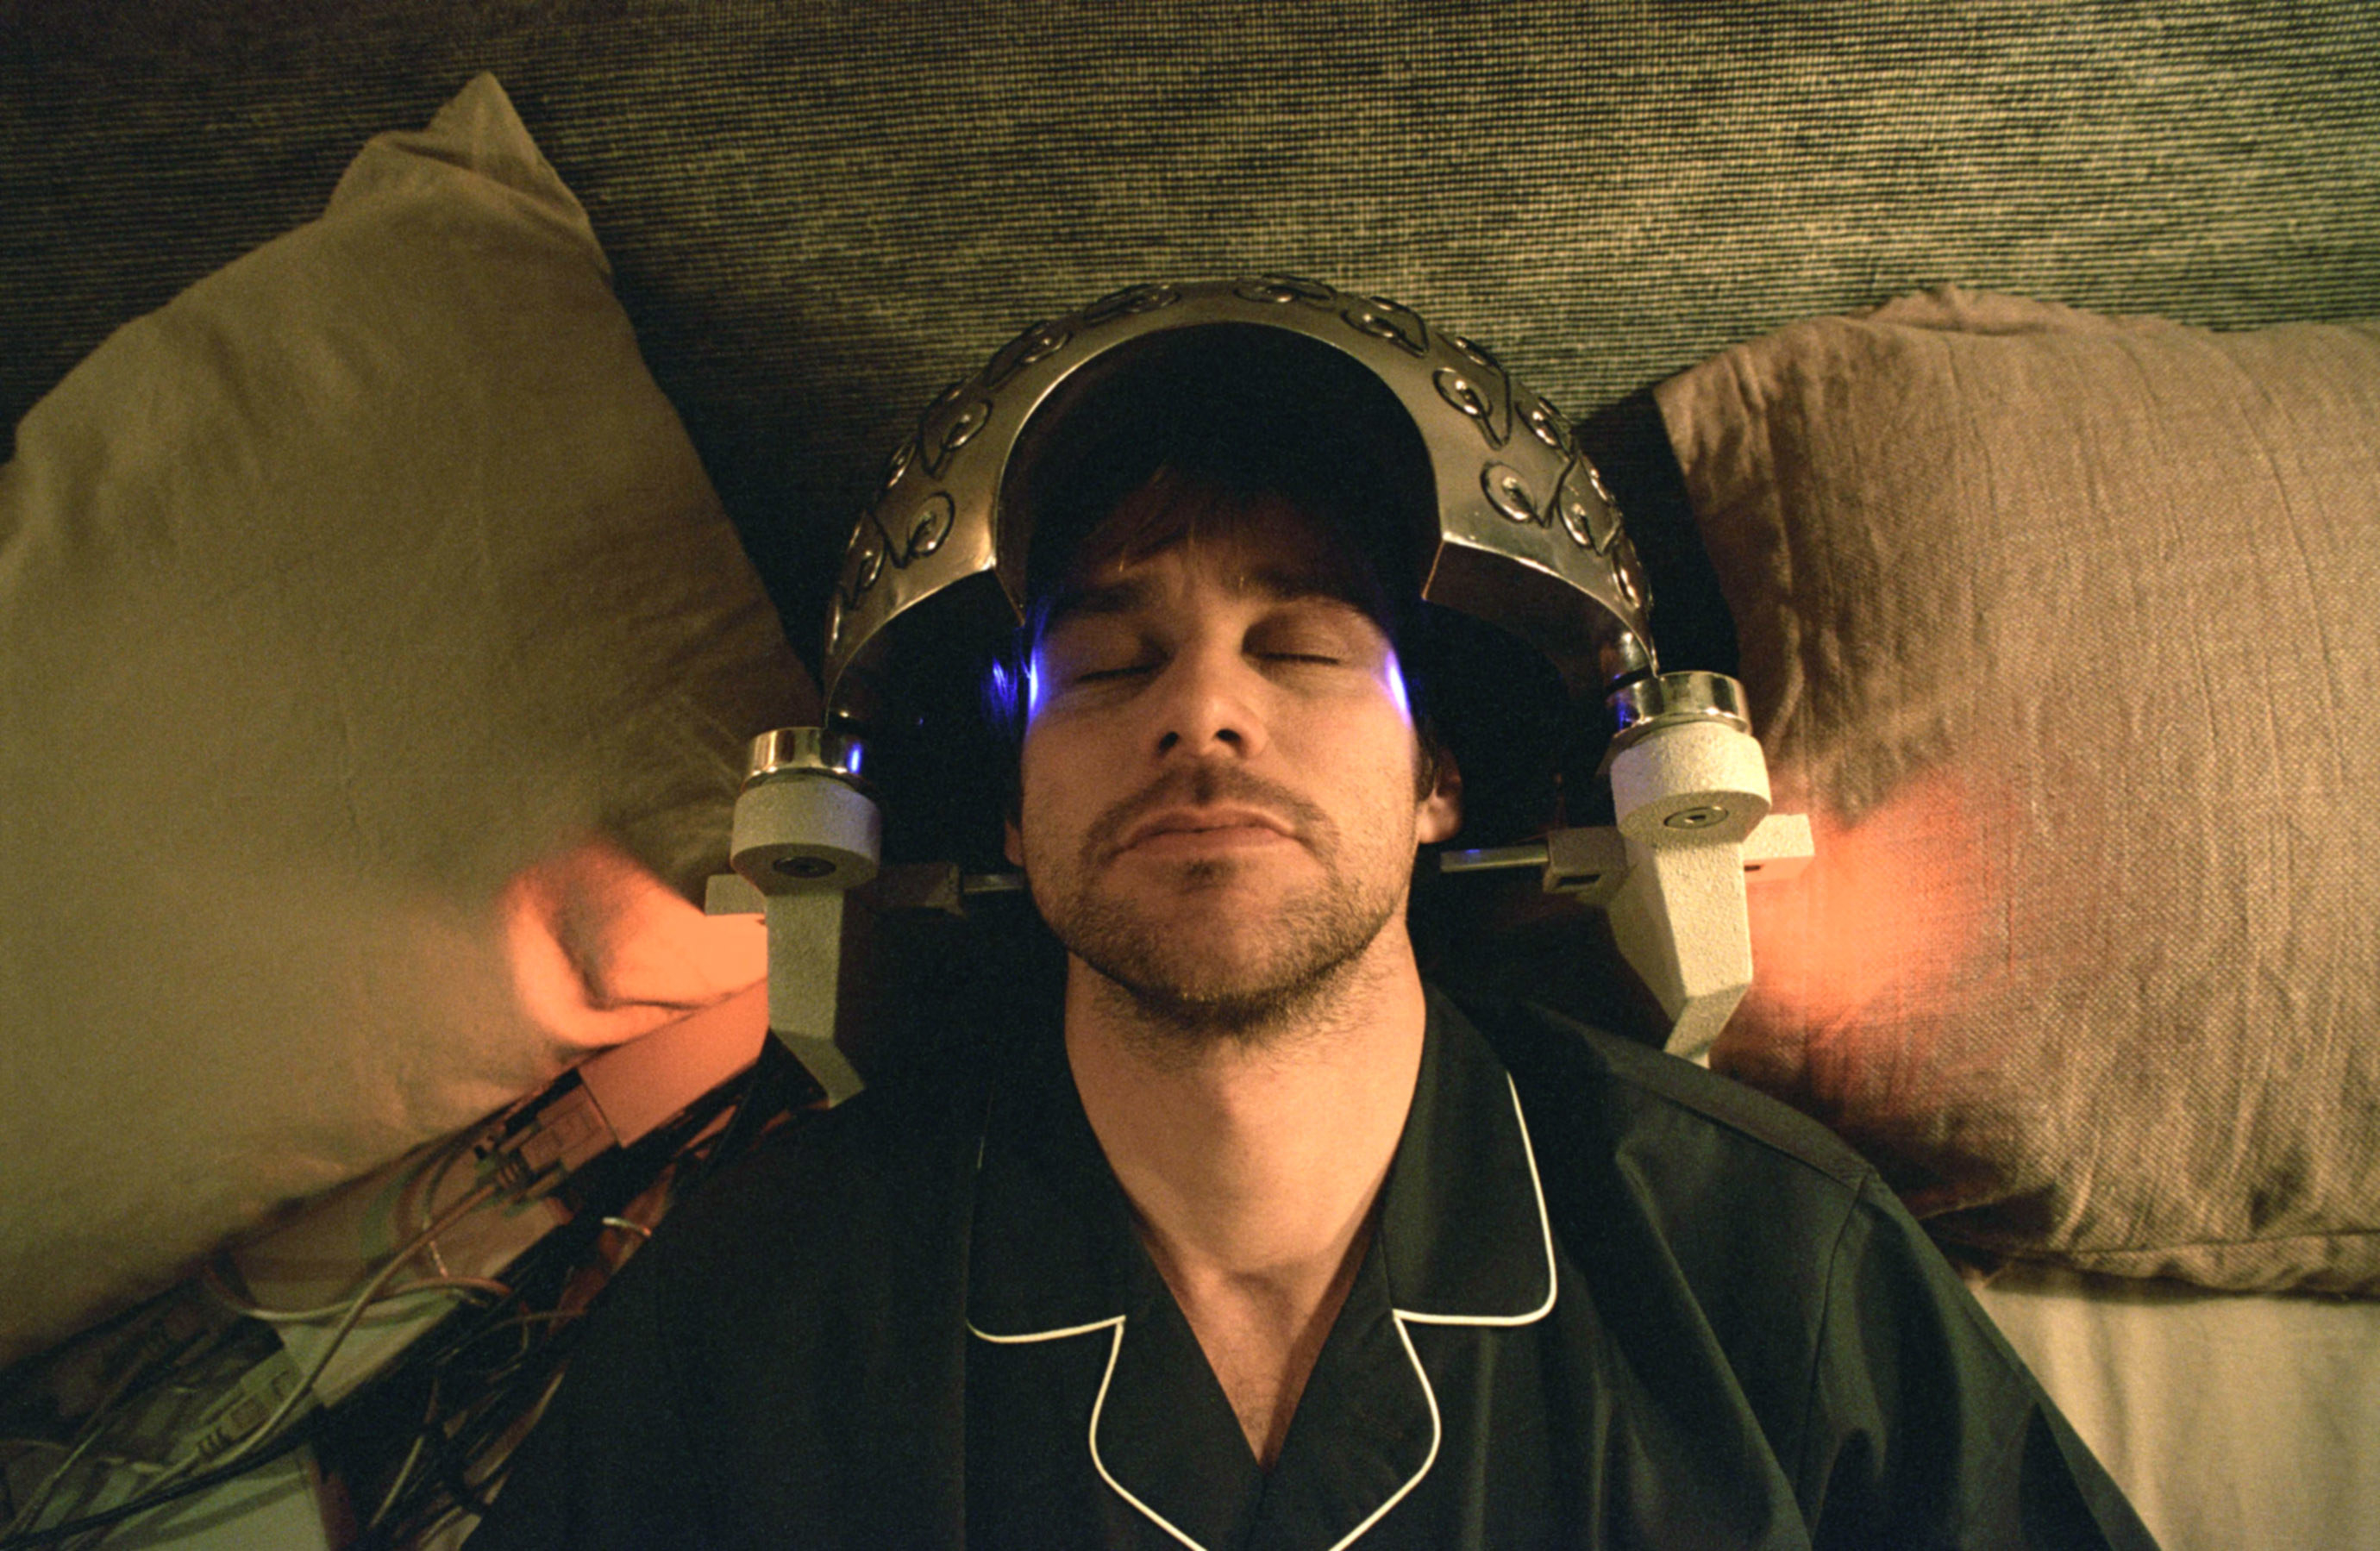 A man sleeps with a strange dome-shaped machine on his head